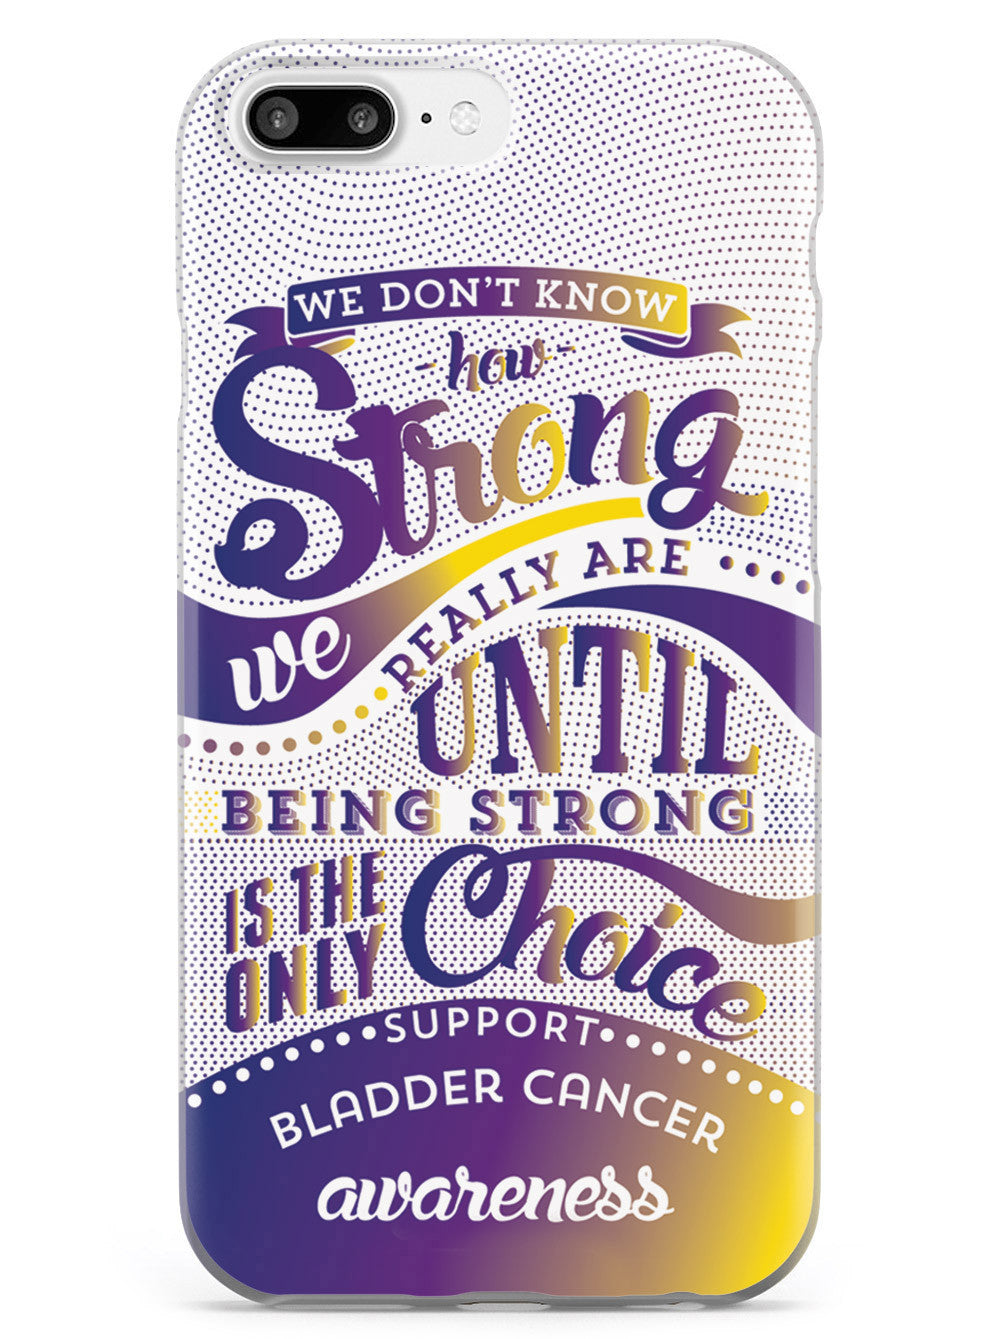 Bladder Cancer - How Strong Case